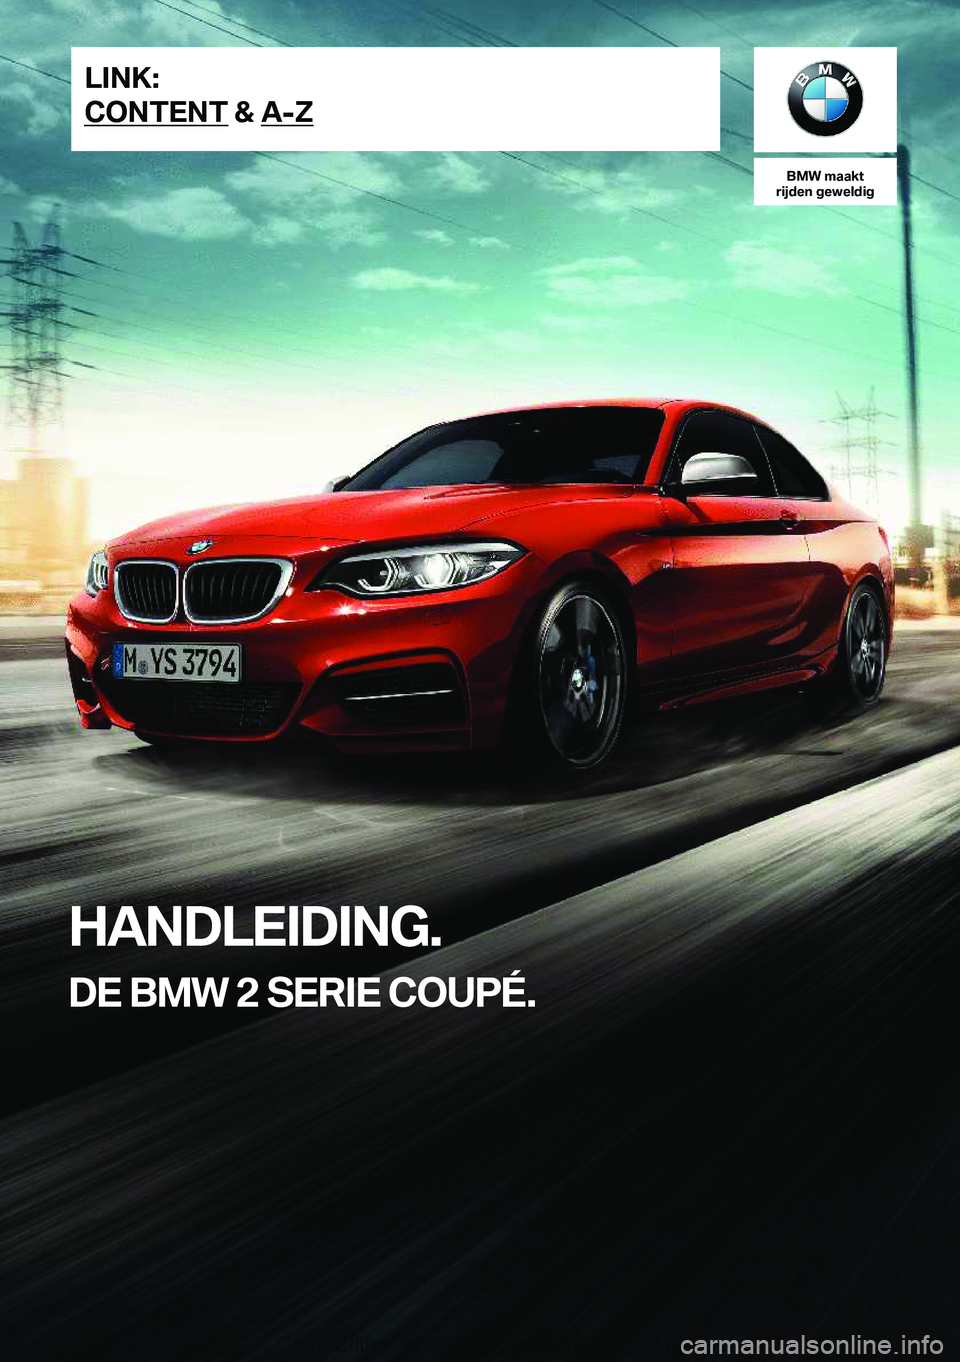 BMW 2 SERIES COUPE 2020  Instructieboekjes (in Dutch) �B�M�W��m�a�a�k�t
�r�i�j�d�e�n��g�e�w�e�l�d�i�g
�H�A�N�D�L�E�I�D�I�N�G�.
�D�E��B�M�W��2��S�E�R�I�E��C�O�U�P�